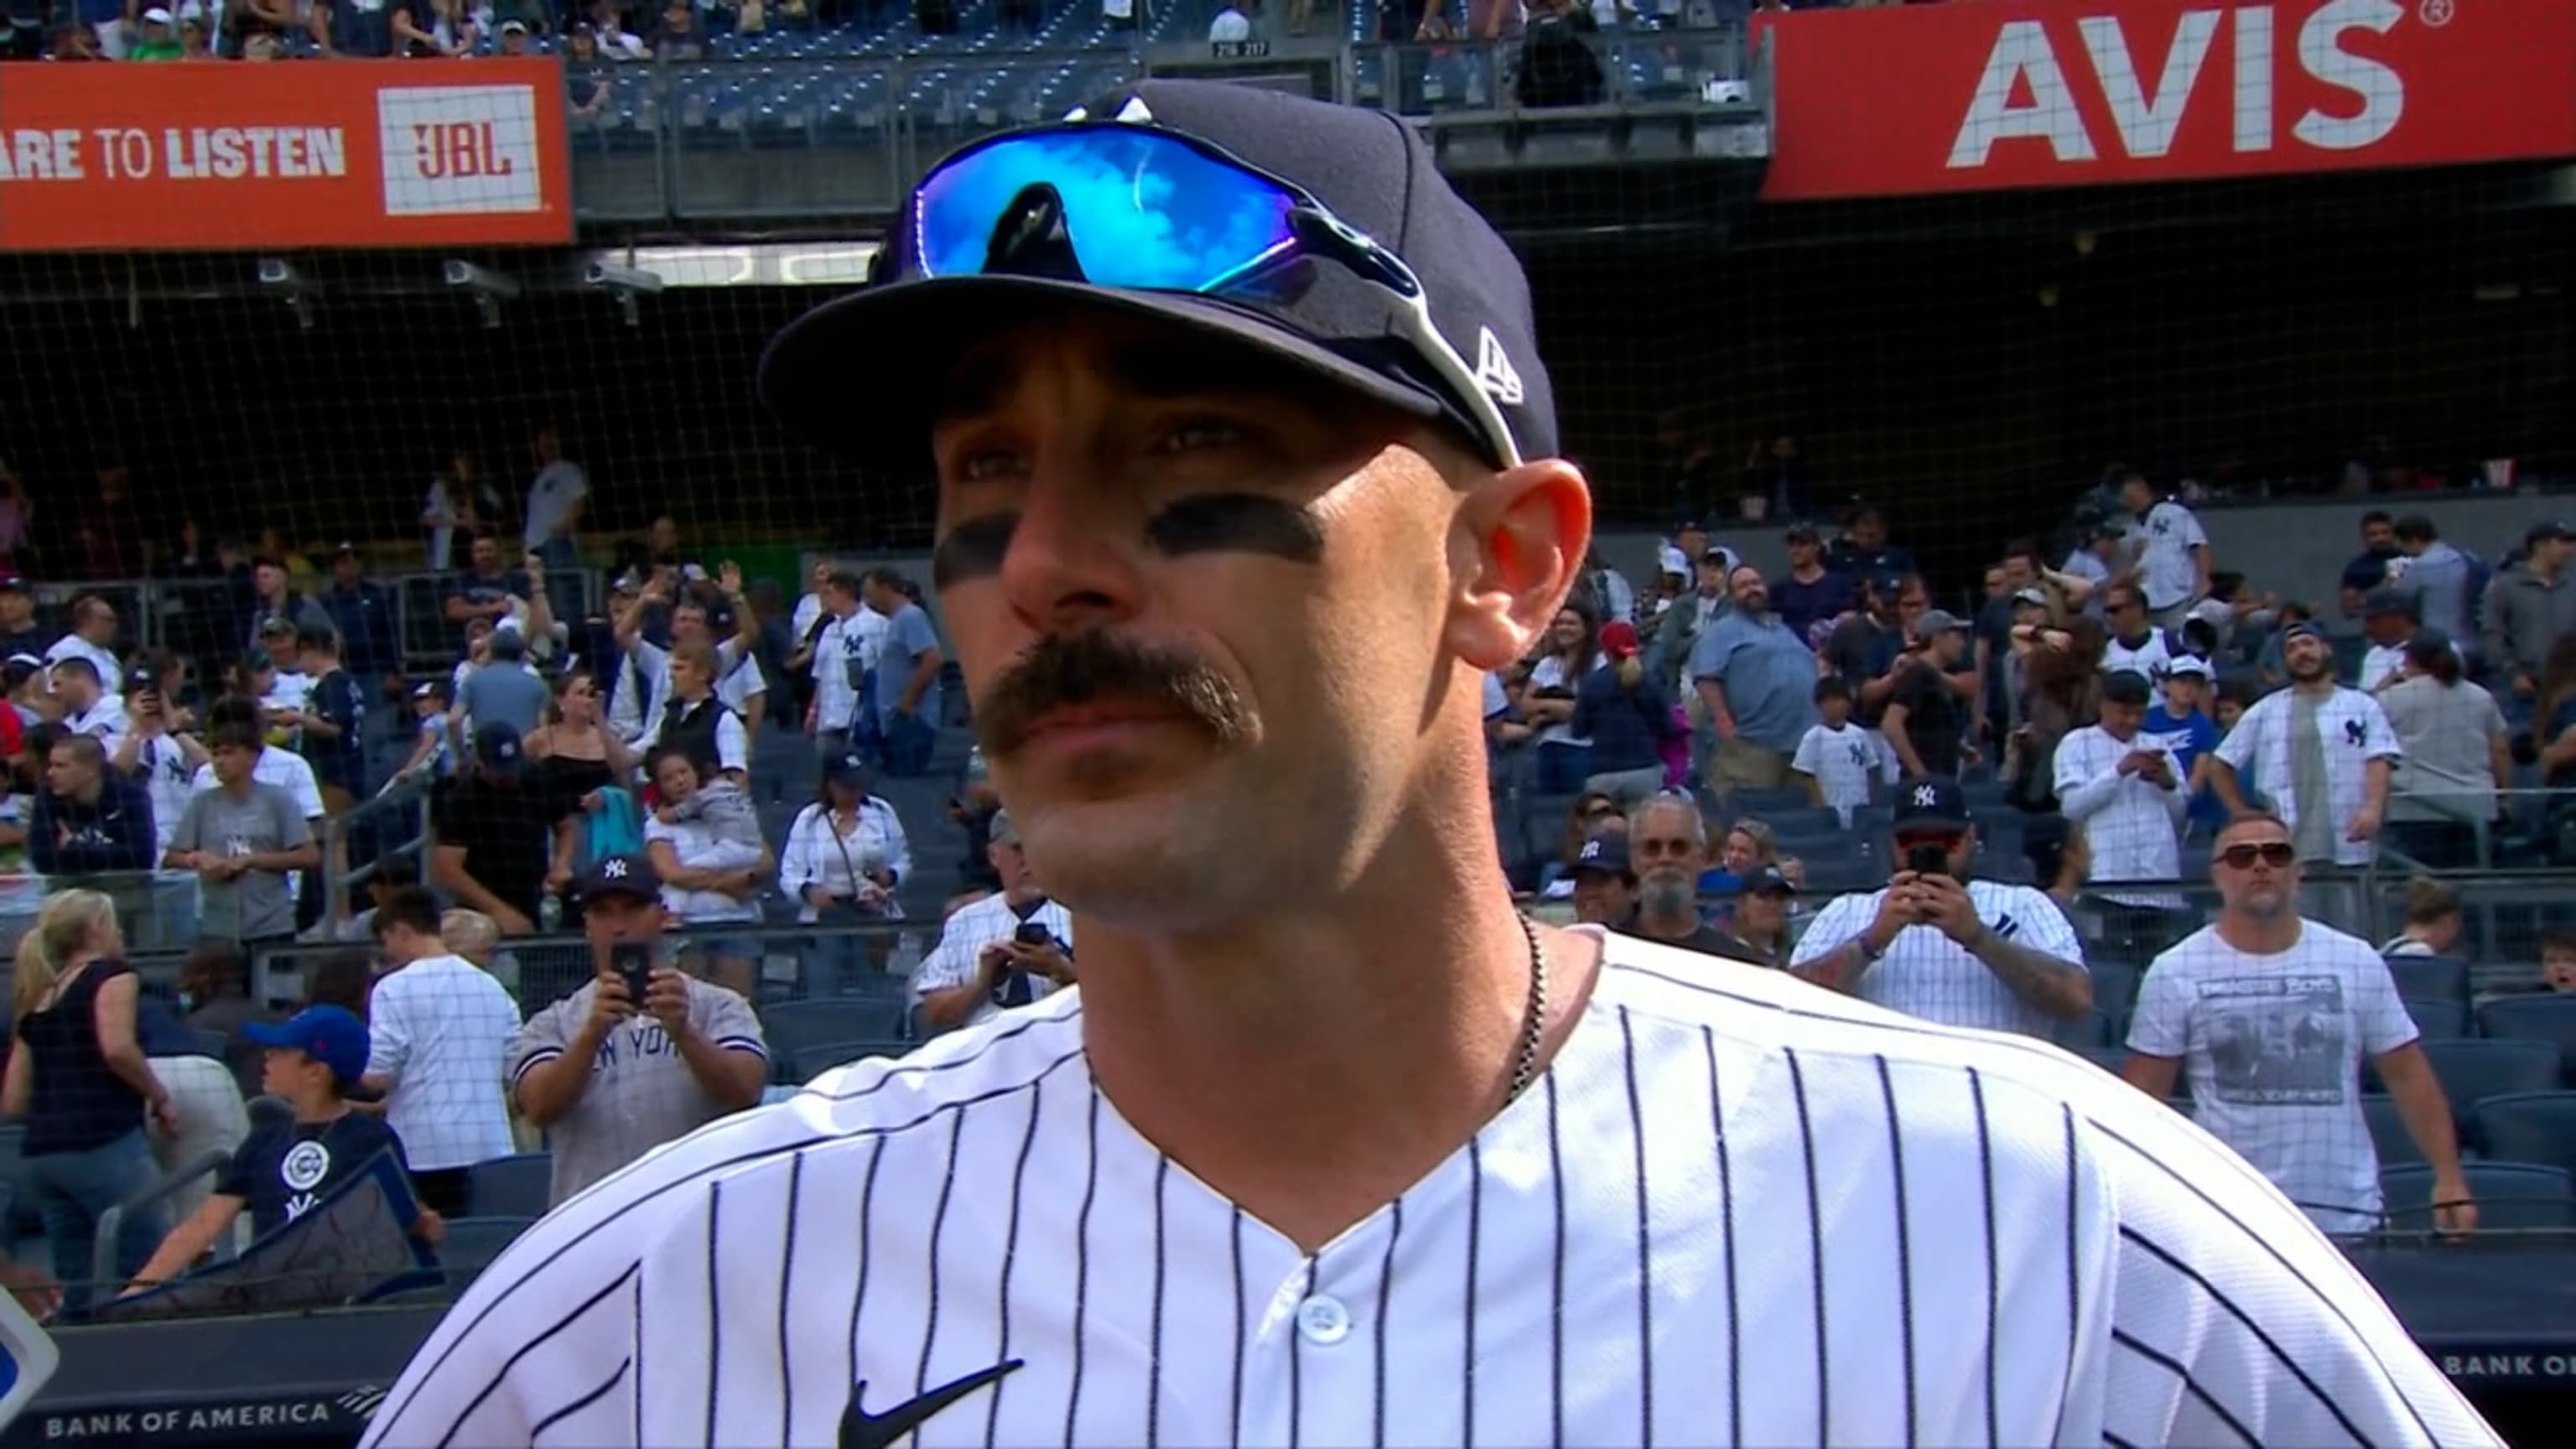 Matt Carpenter joins list of great Yankees mustaches